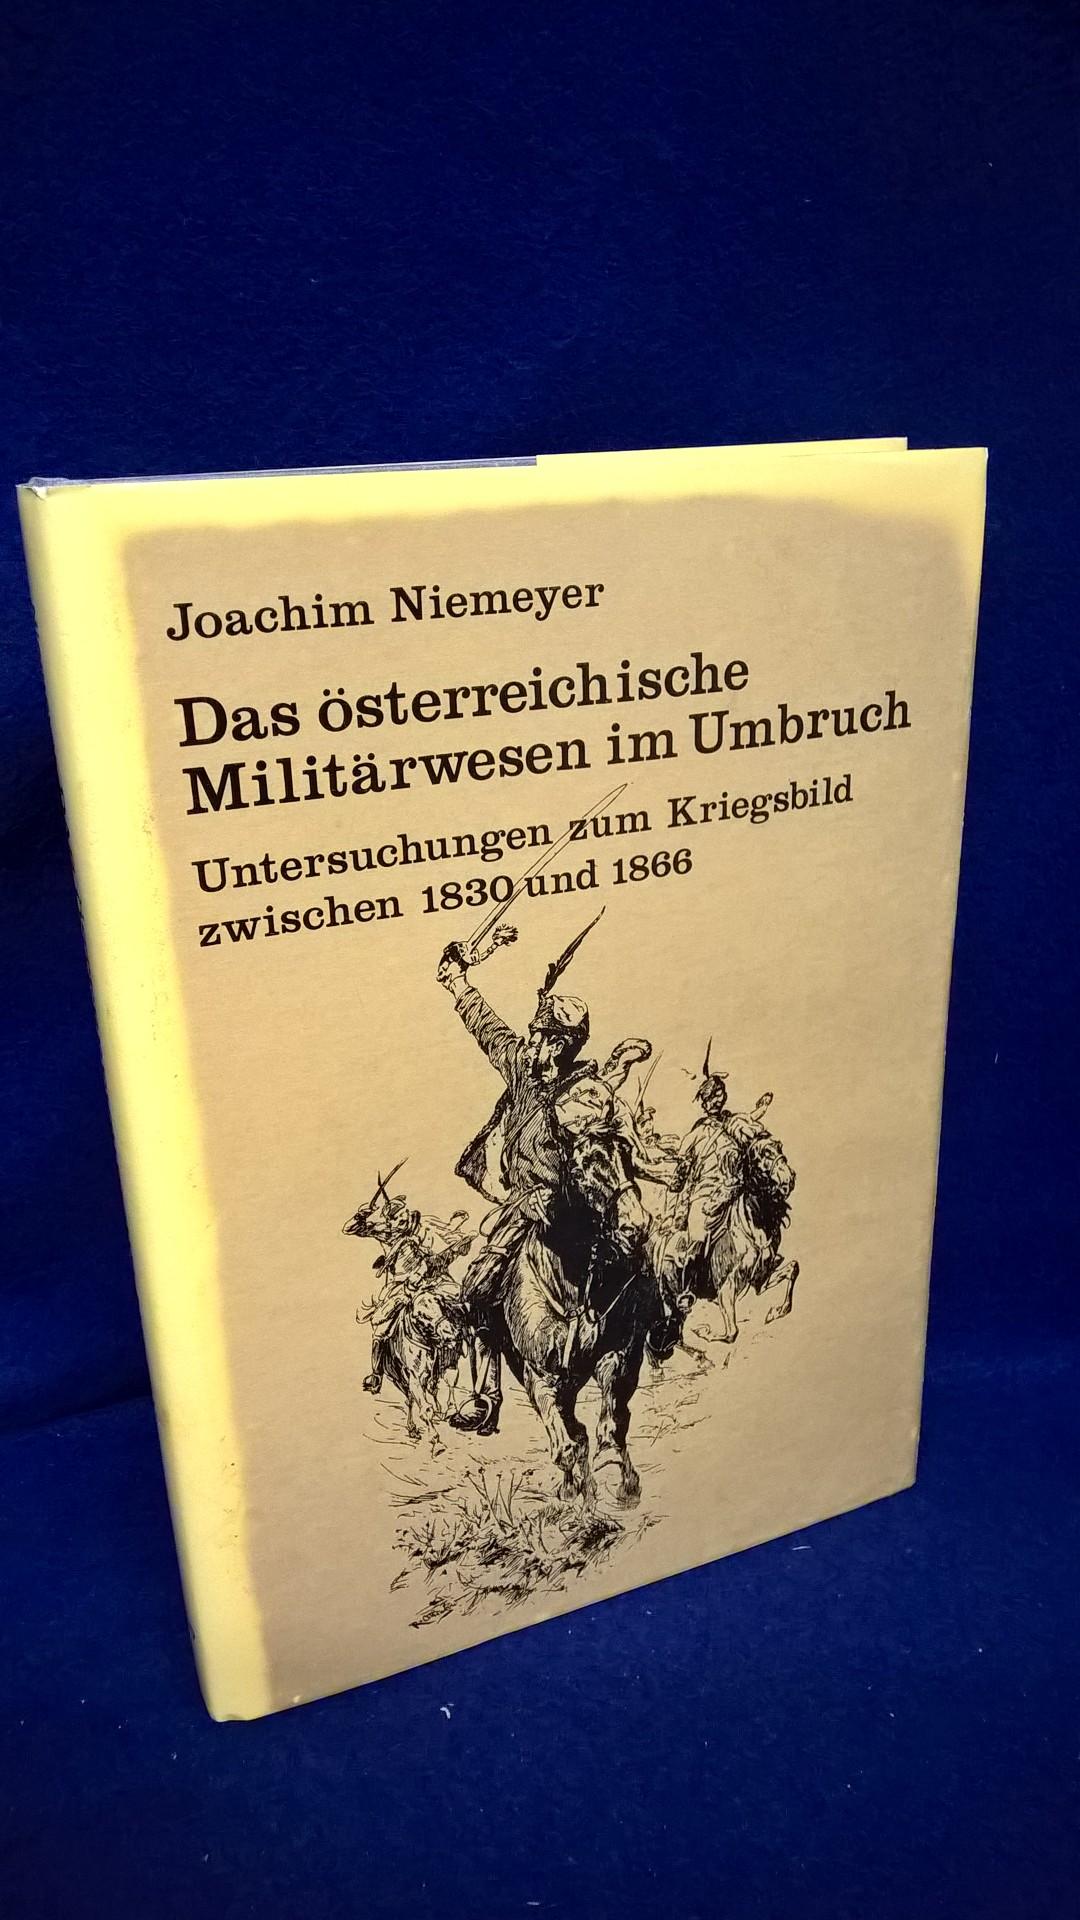 Das österreichische Militärwesen im Umbruch - Untersuchungen zum Kriegsbild zwischen 1830 und 1866